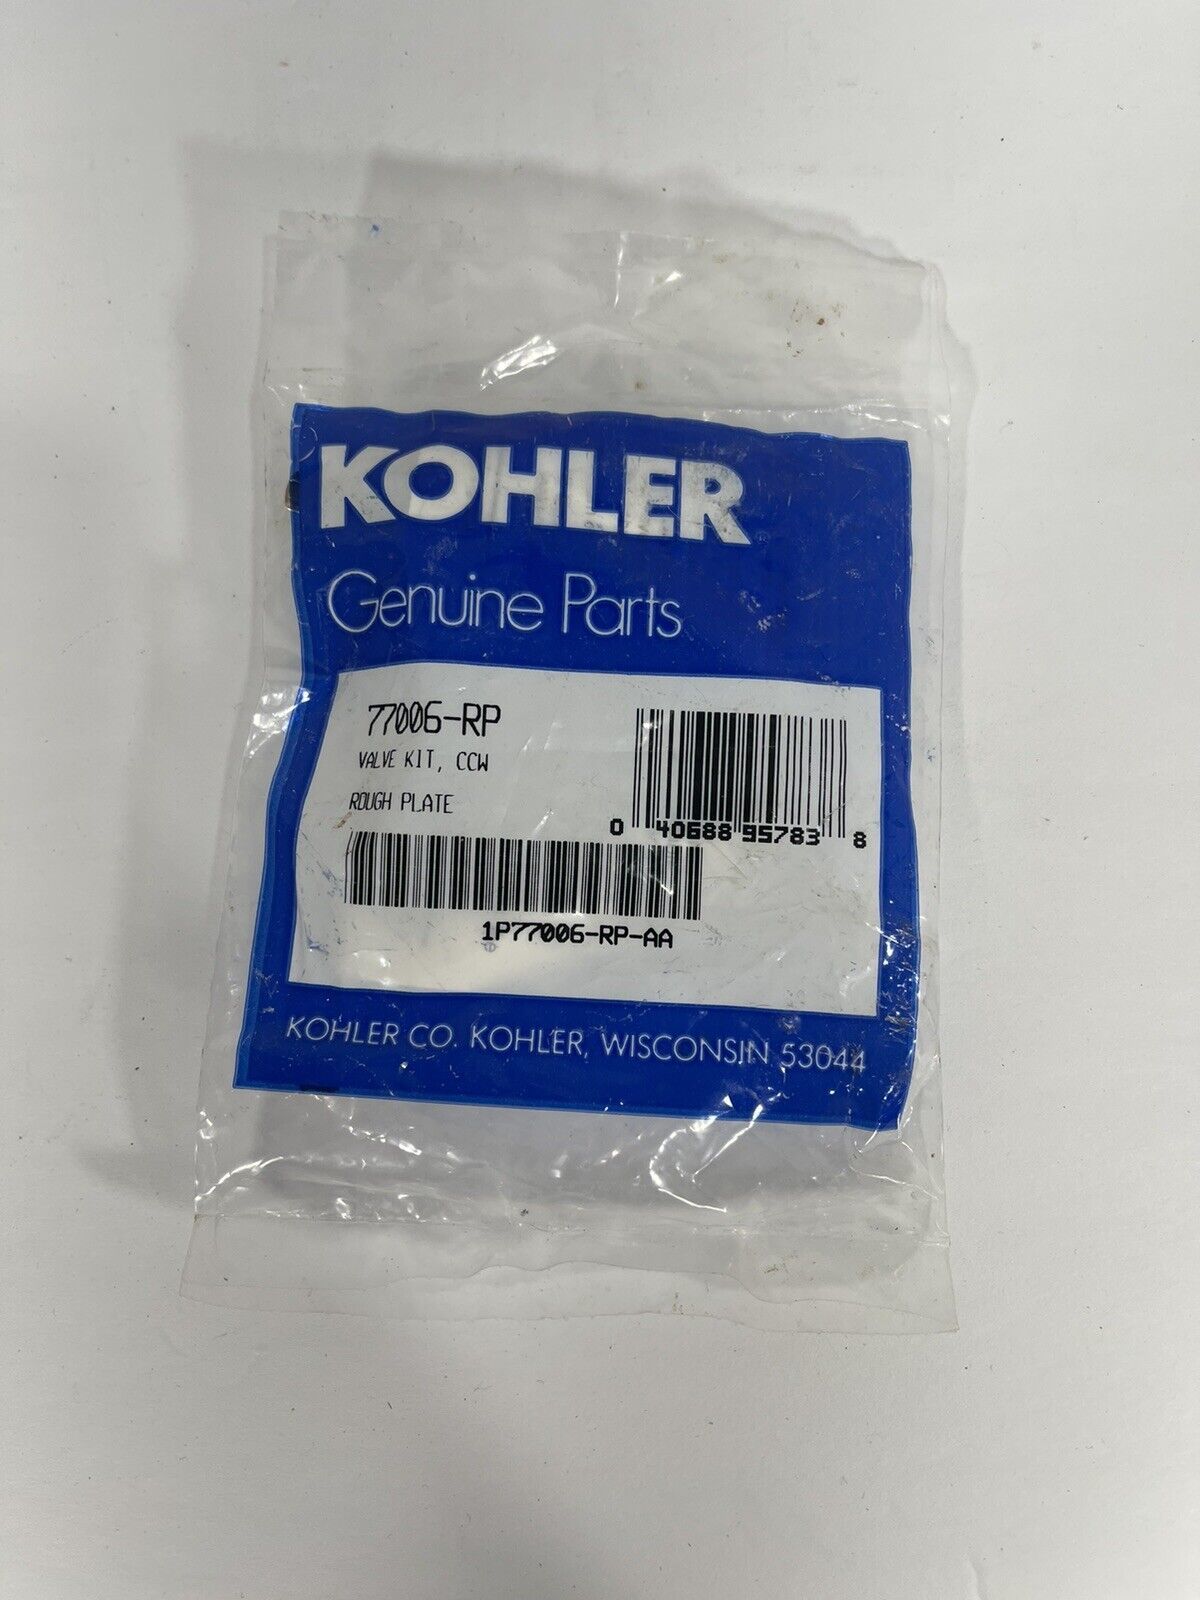 BRAND NEW KOHLER GENUINE PARTS 77006-RP Ceramic VALVE Kit Rough Plate SEALED - $19.59